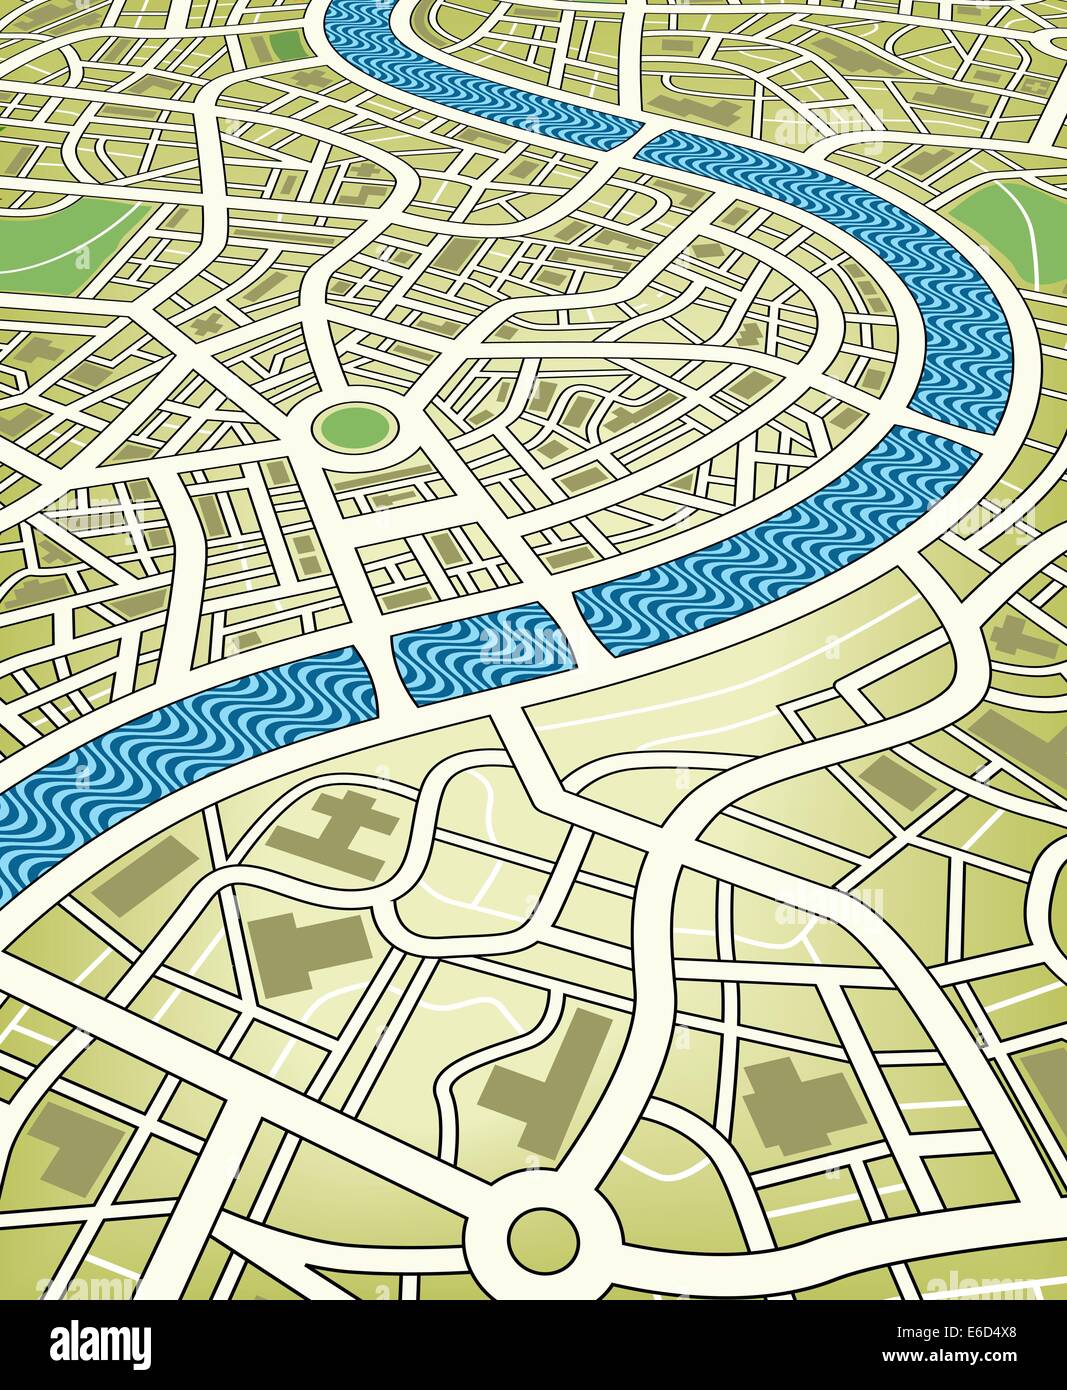 Modificabile illustrazione vettoriale di un anonimo mappa stradale da una prospettiva angolata Illustrazione Vettoriale